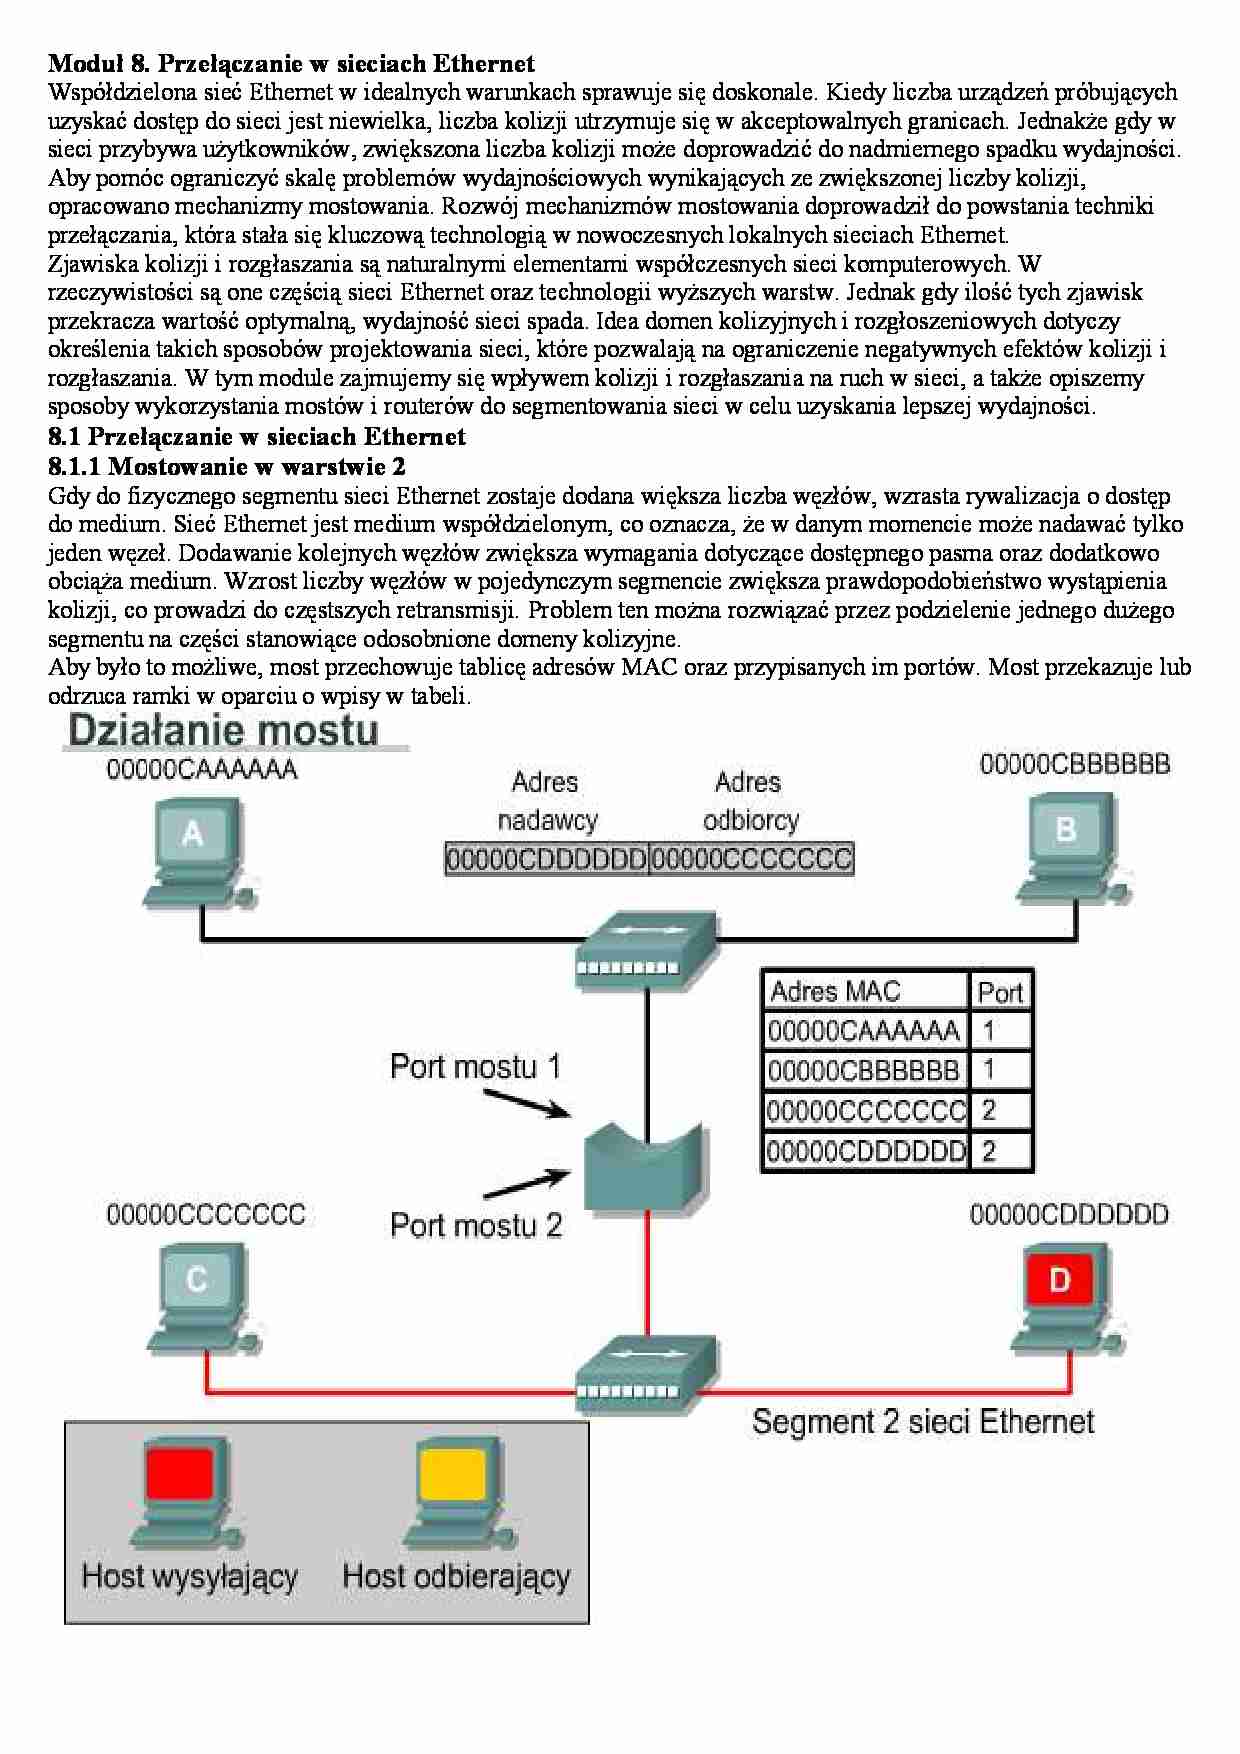 Przełączenia w sieciach - wykład - strona 1